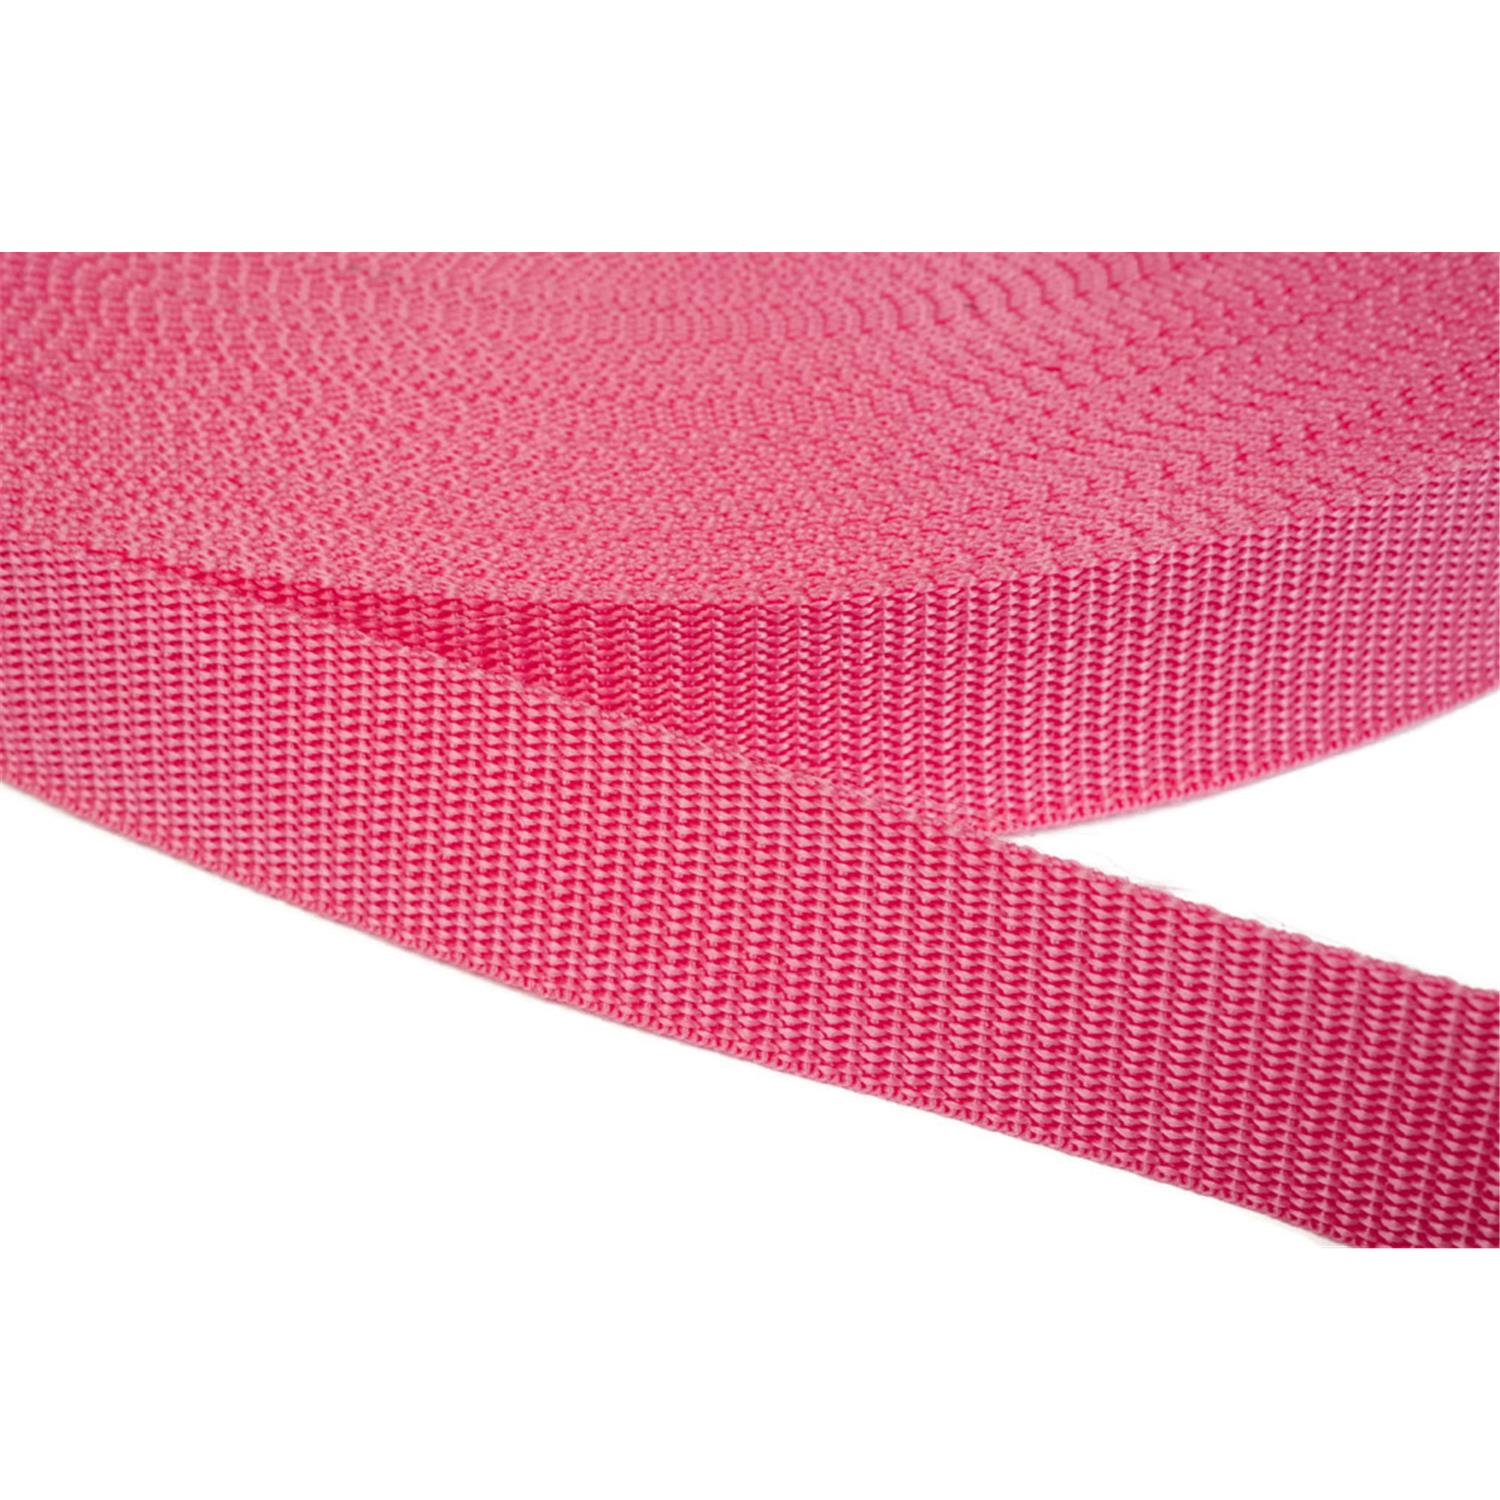 Gurtband 30mm breit aus Polypropylen in 41 Farben 13 - pink 6 Meter